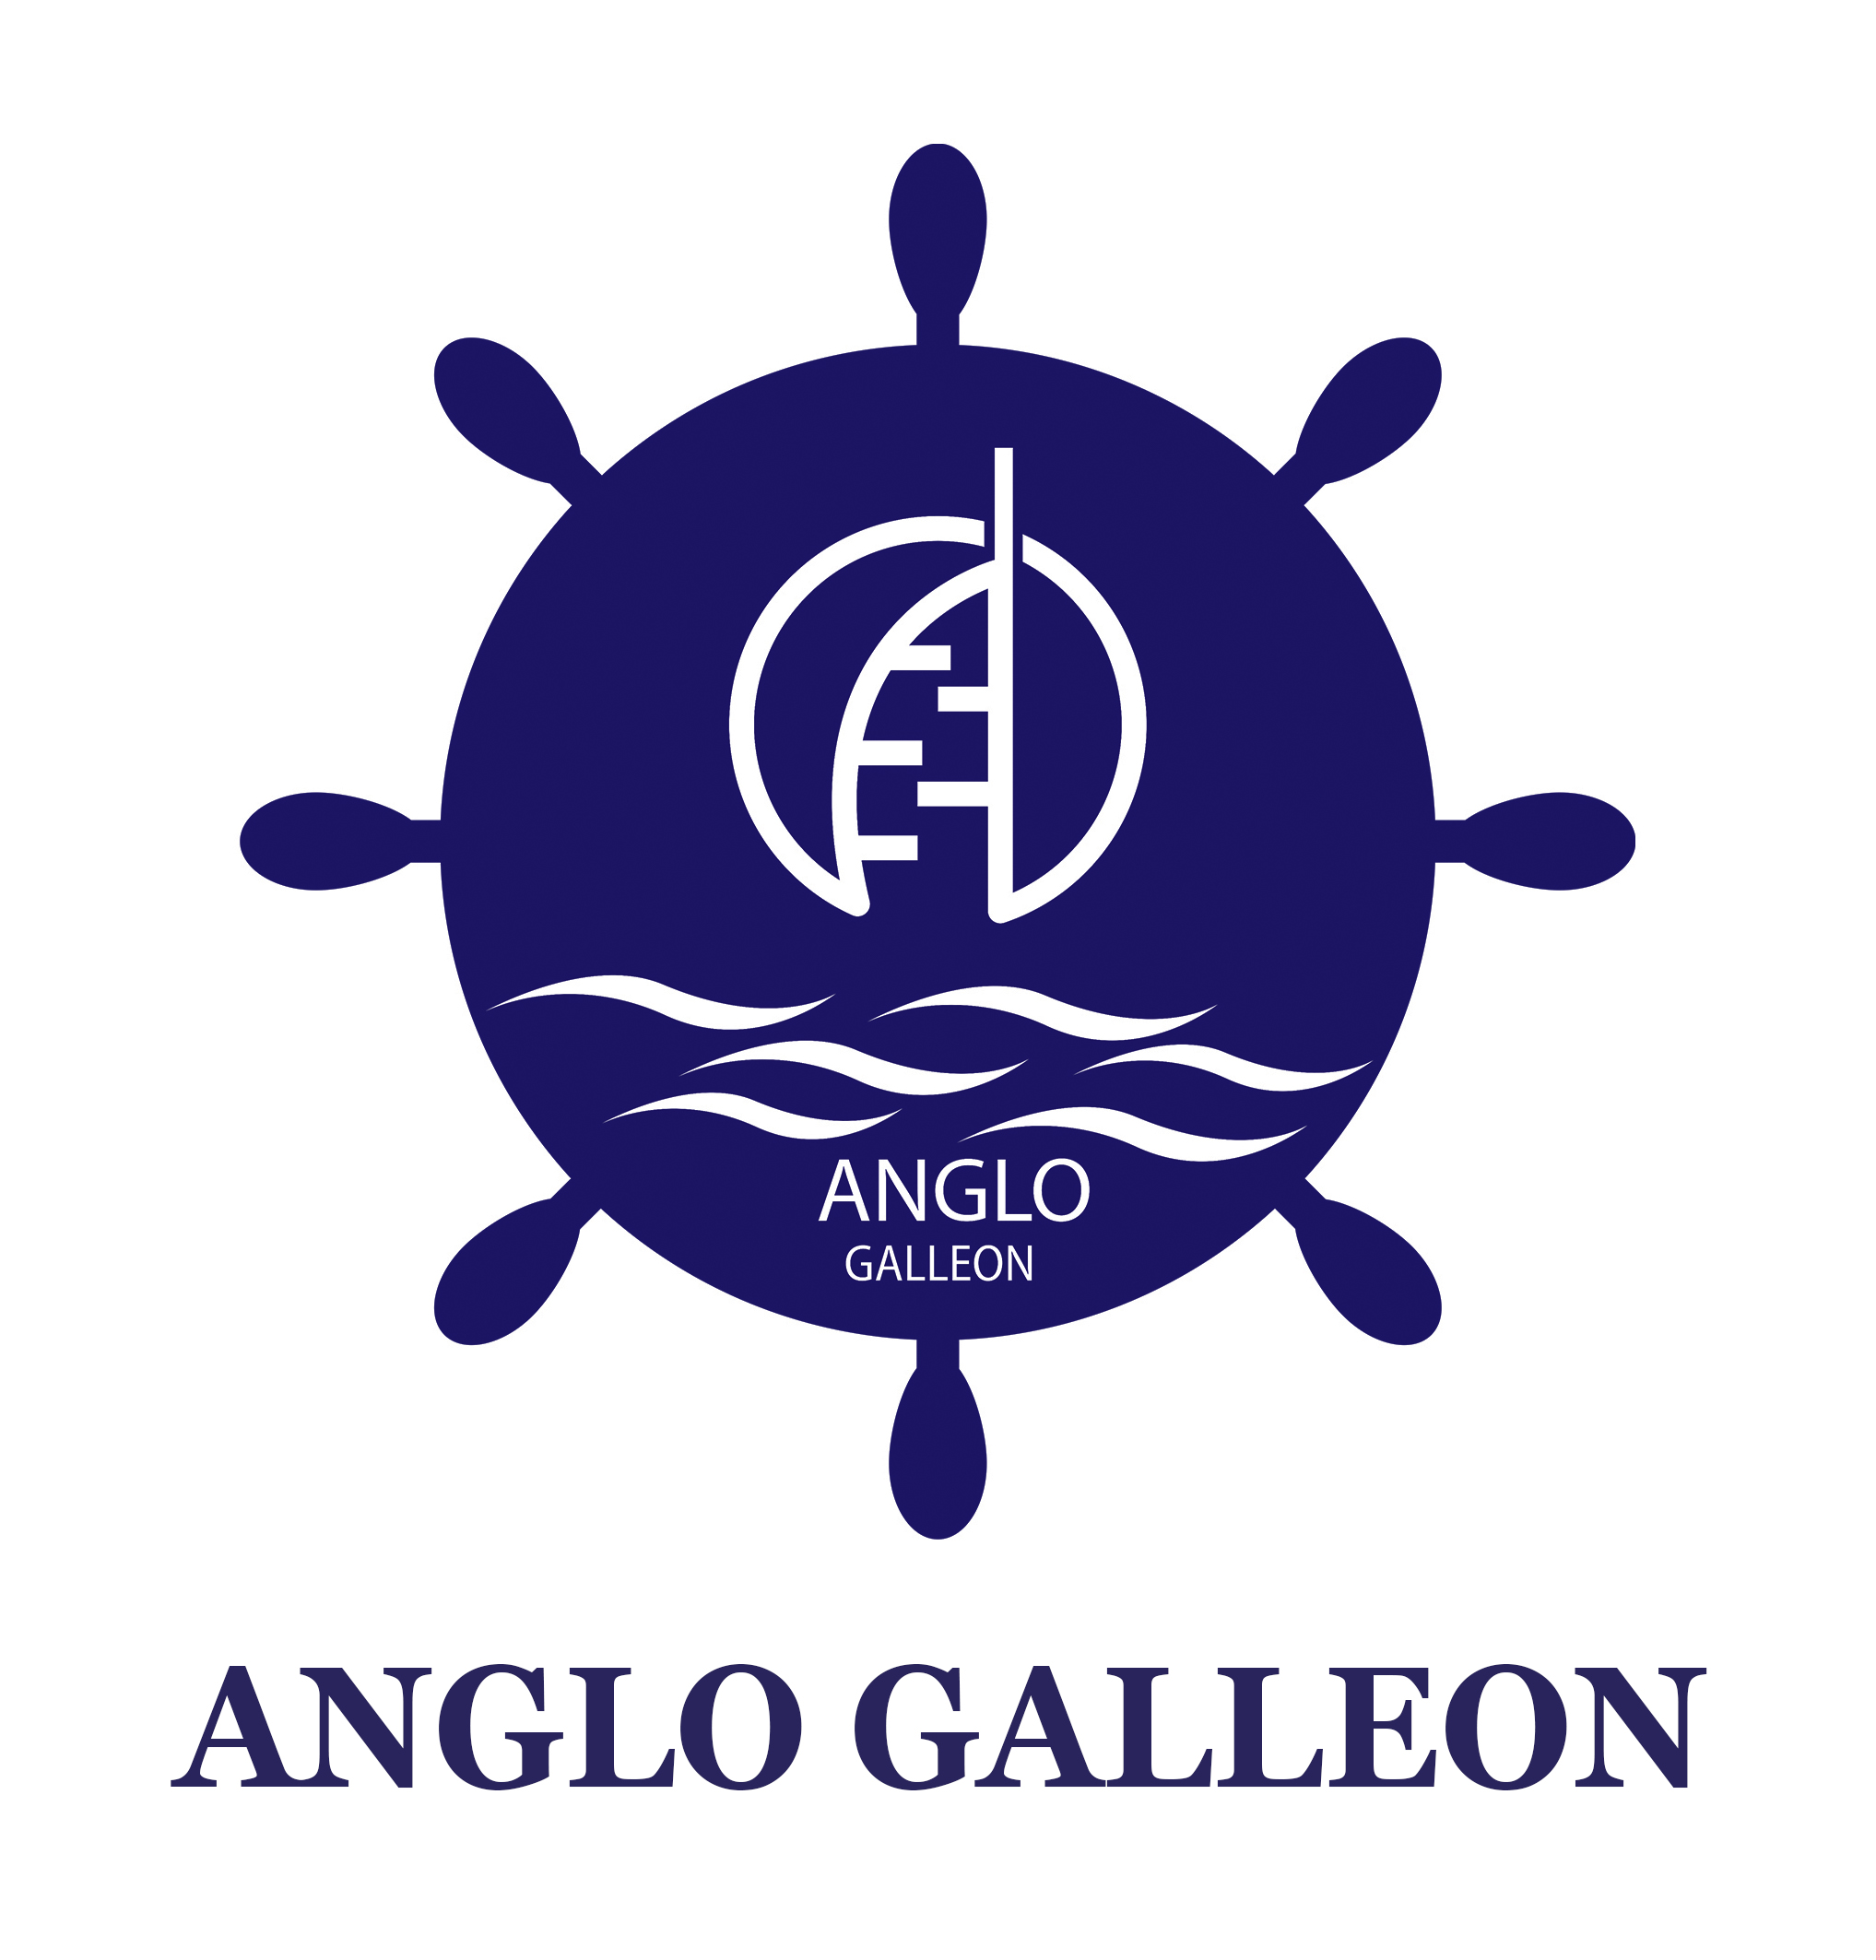 An​g​l​o​ Ga​l​l​e​o​n​ In​t​e​r​n​a​t​i​o​n​a​l​ Lt​d​